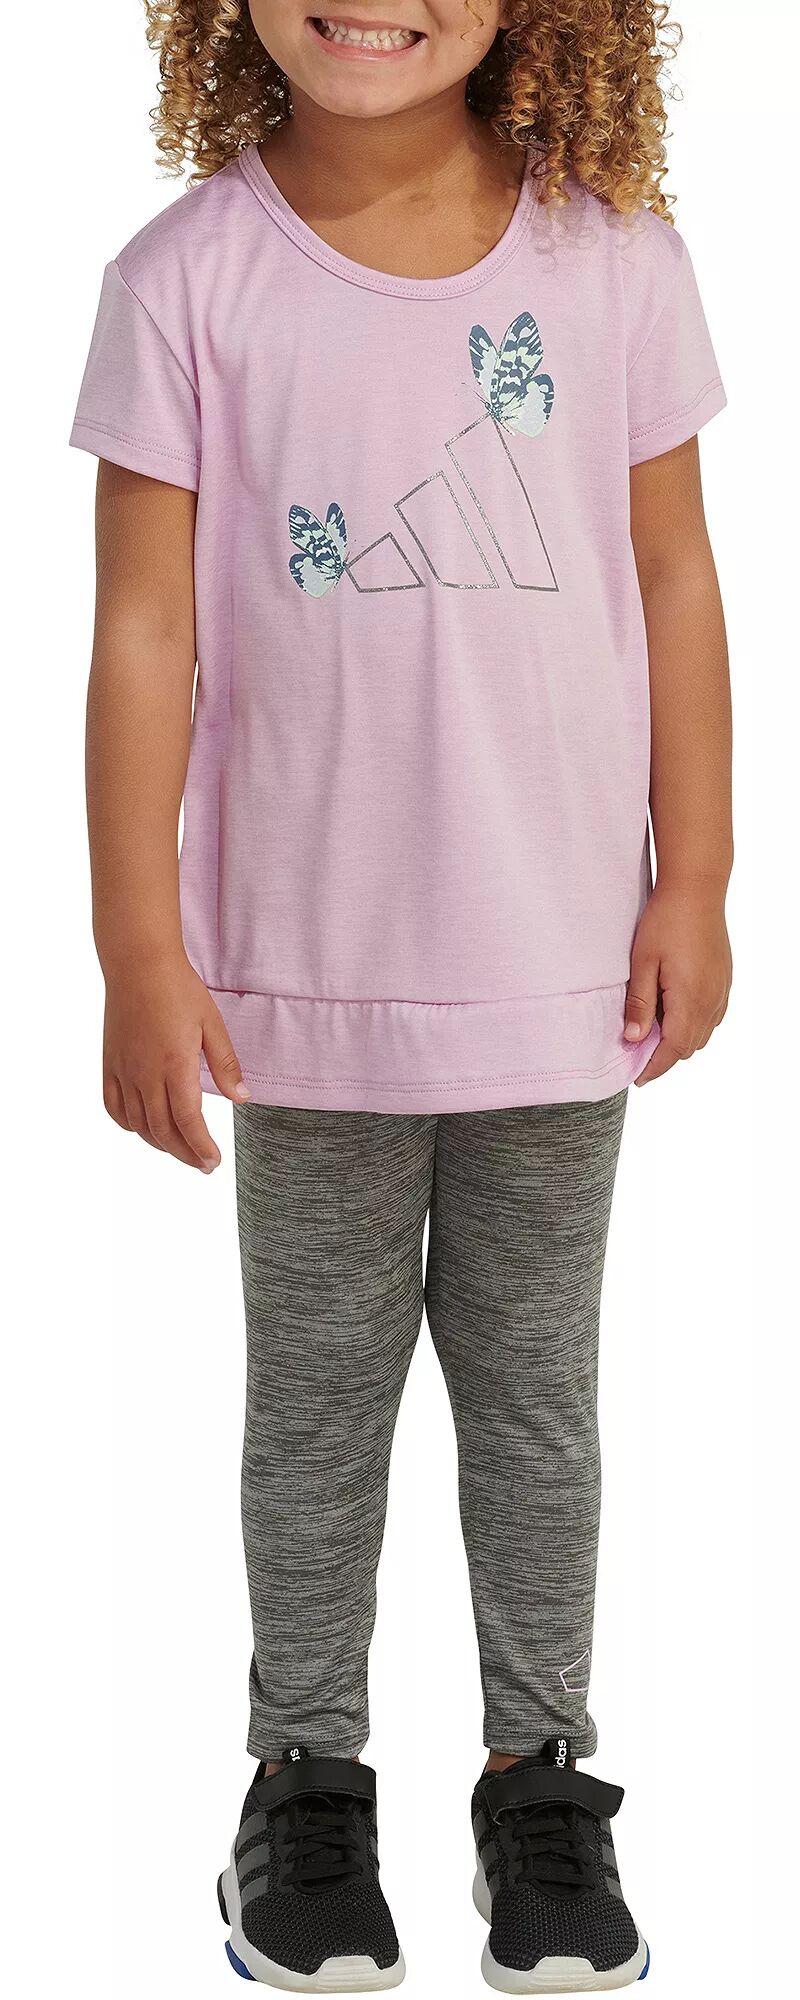 Комплект из меланжевой футболки и леггинсов Adidas Little Girls из двух предметов комплект из двух предметов блузки и леггинсов 2 года 86 см бежевый